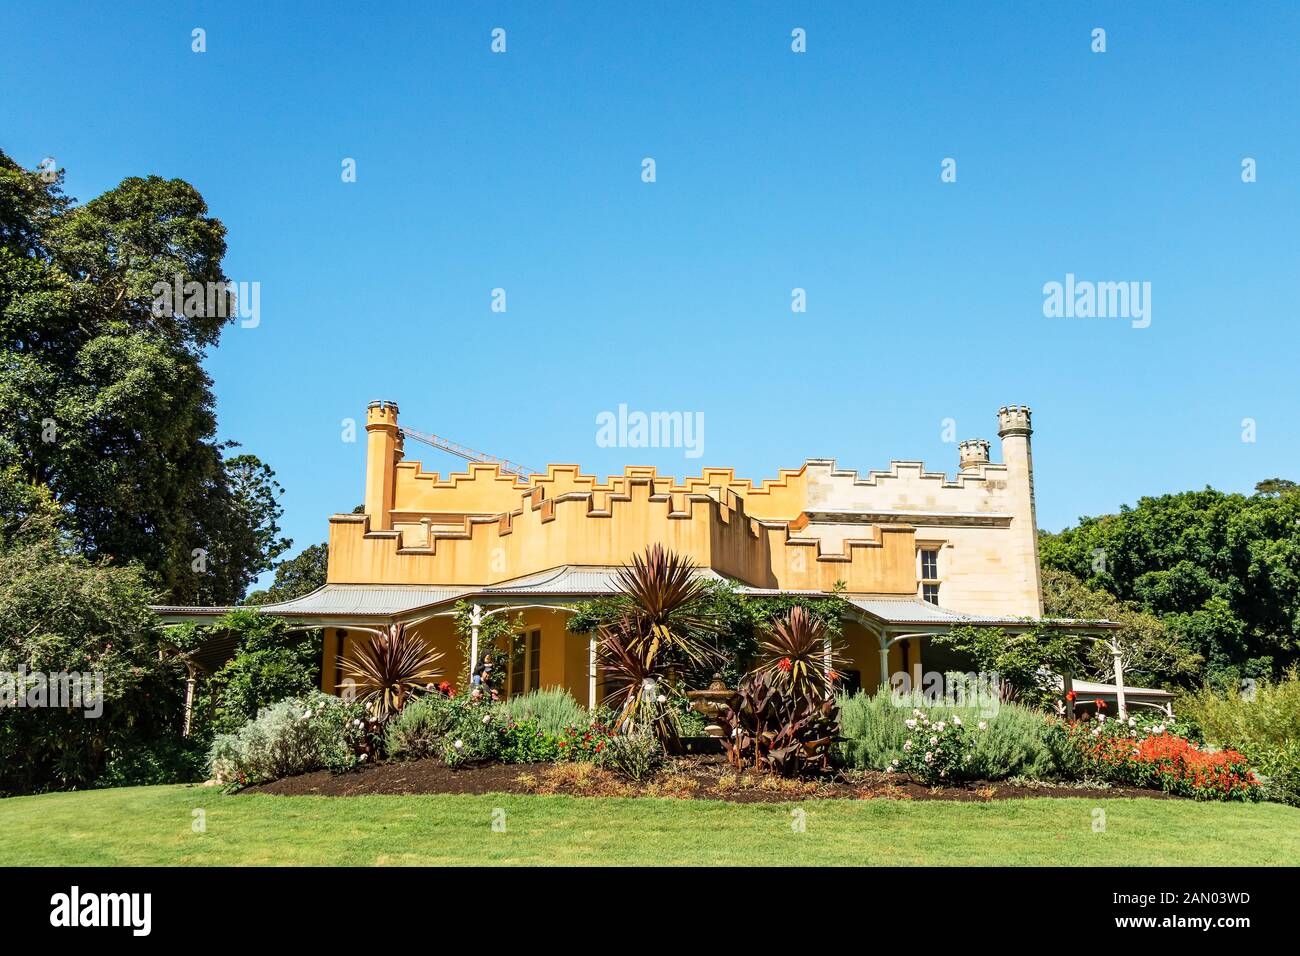 Vaucluse House est un manoir du xixe siècle, entouré par son parc boisé et de jardins d'origine dans la banlieue de Sydney, Australie. Vaucluse Banque D'Images